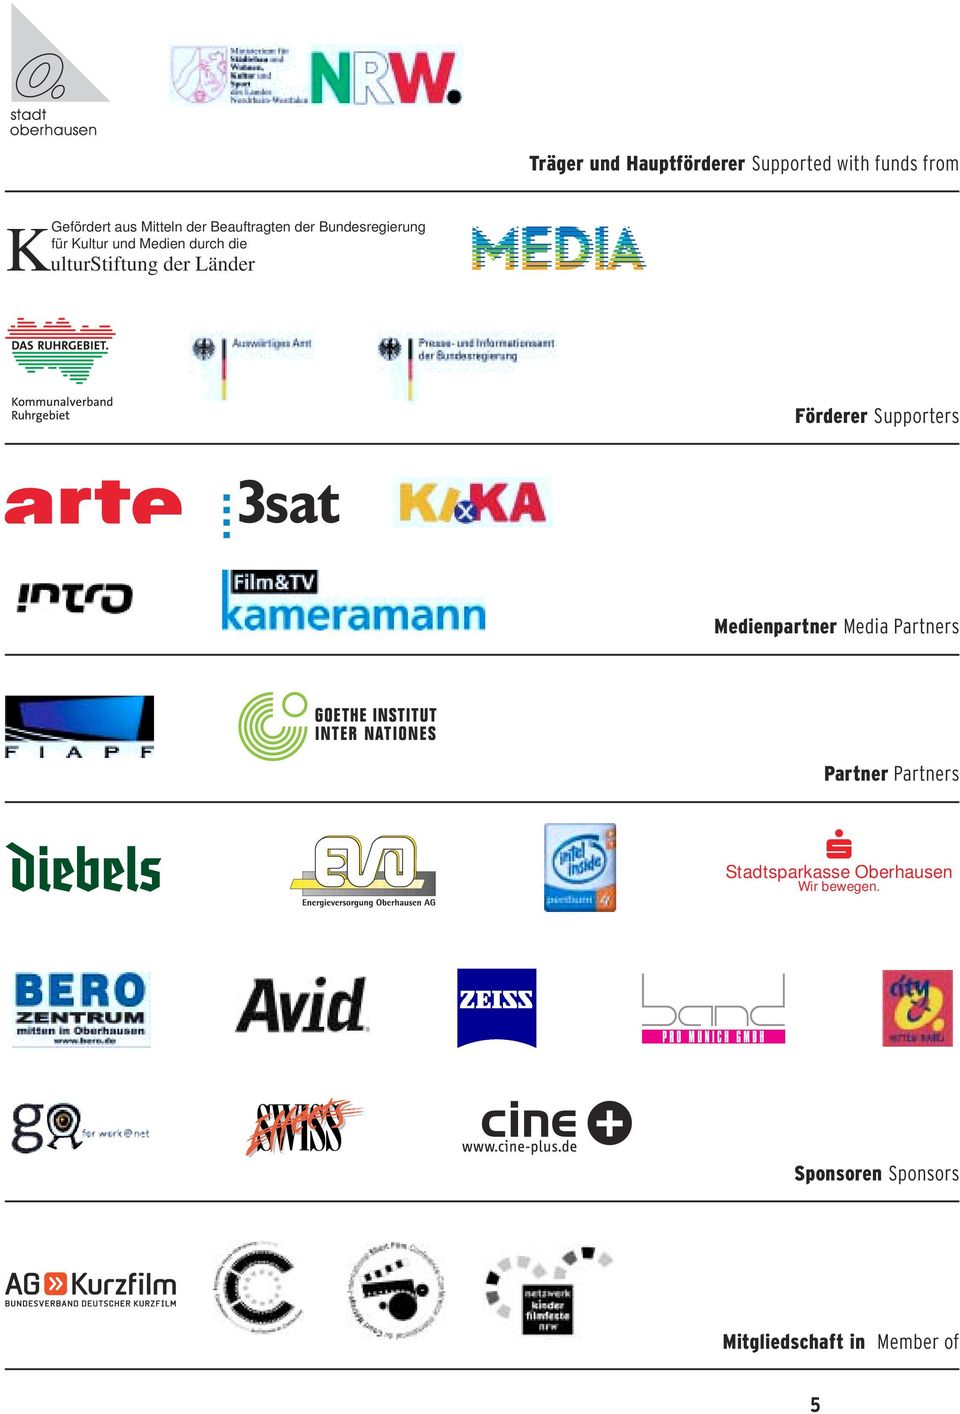 der Länder Förderer Supporters Medienpartner Media Partners Partner Partners s